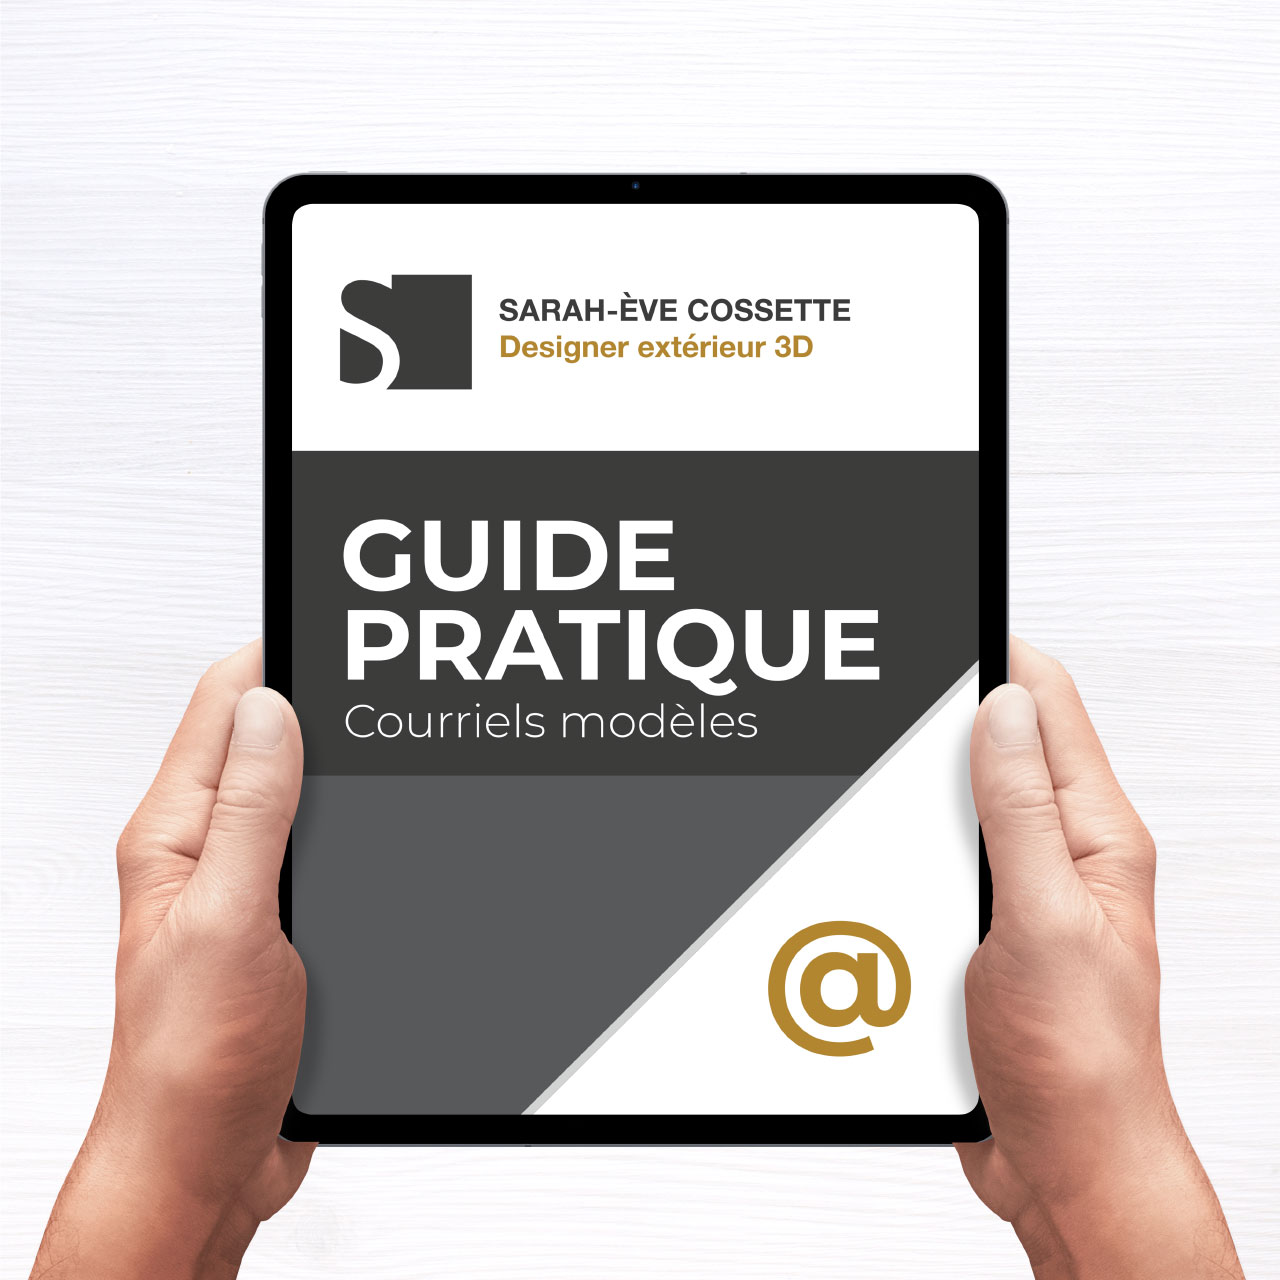 Guide pratique - Courriels modeles Embleme accueil Designer intérieur courriels